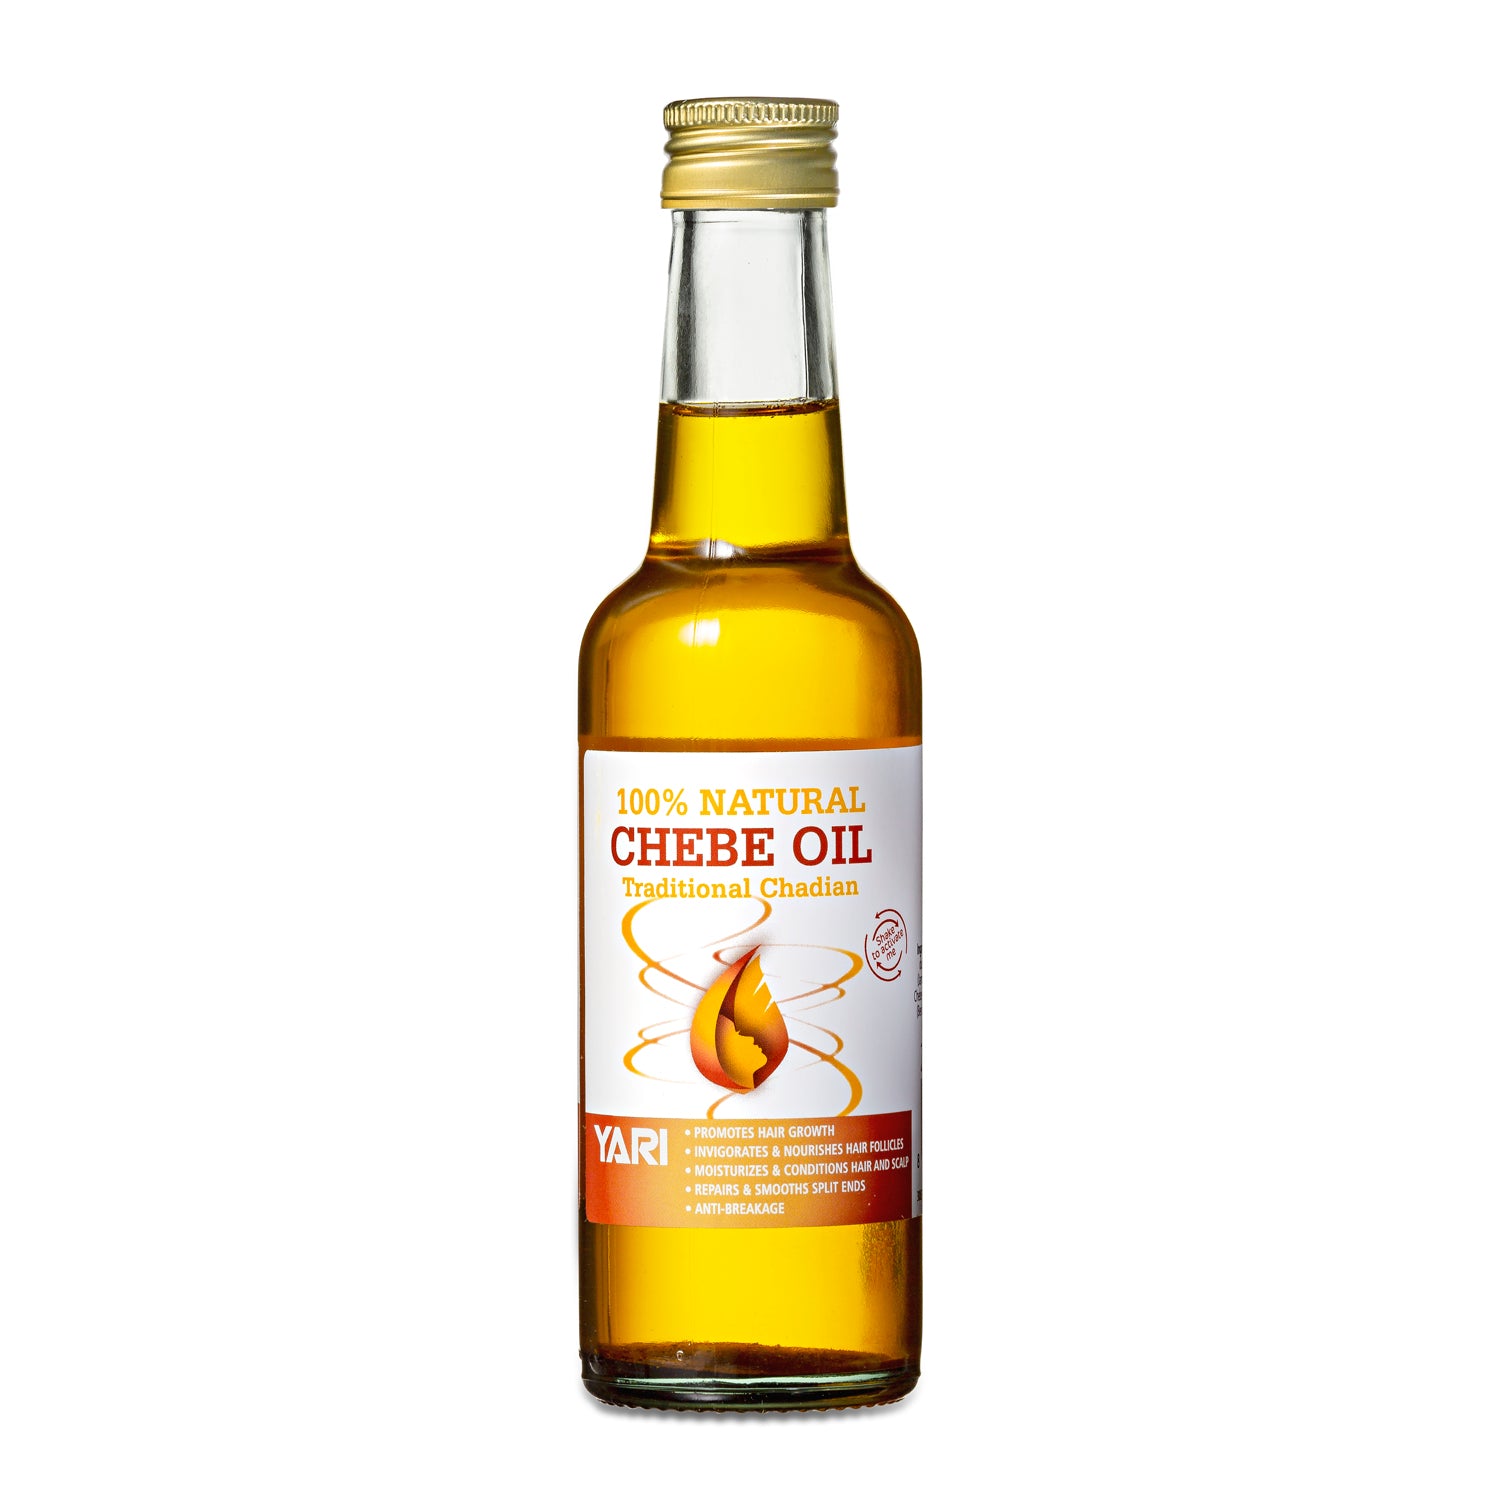 Yari - 100% Natural Chebe Oil 250ml